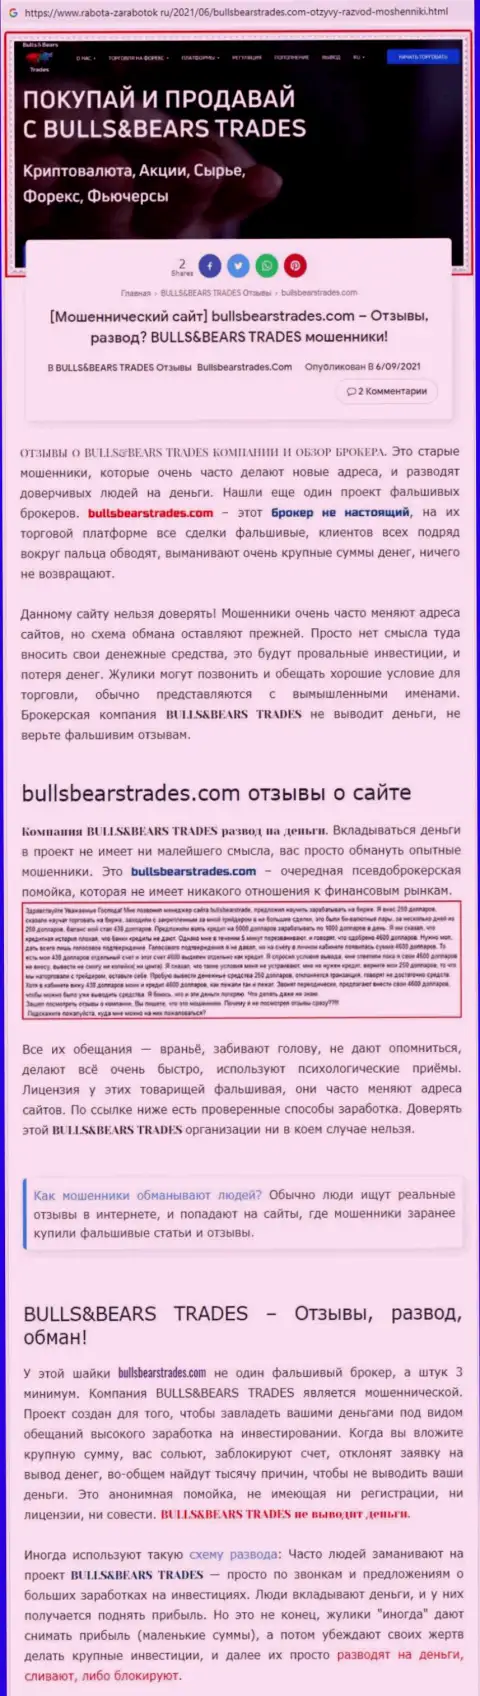 Обзор преступно действующей конторы BullsBearsTrades Com о том, как ворует у лохов